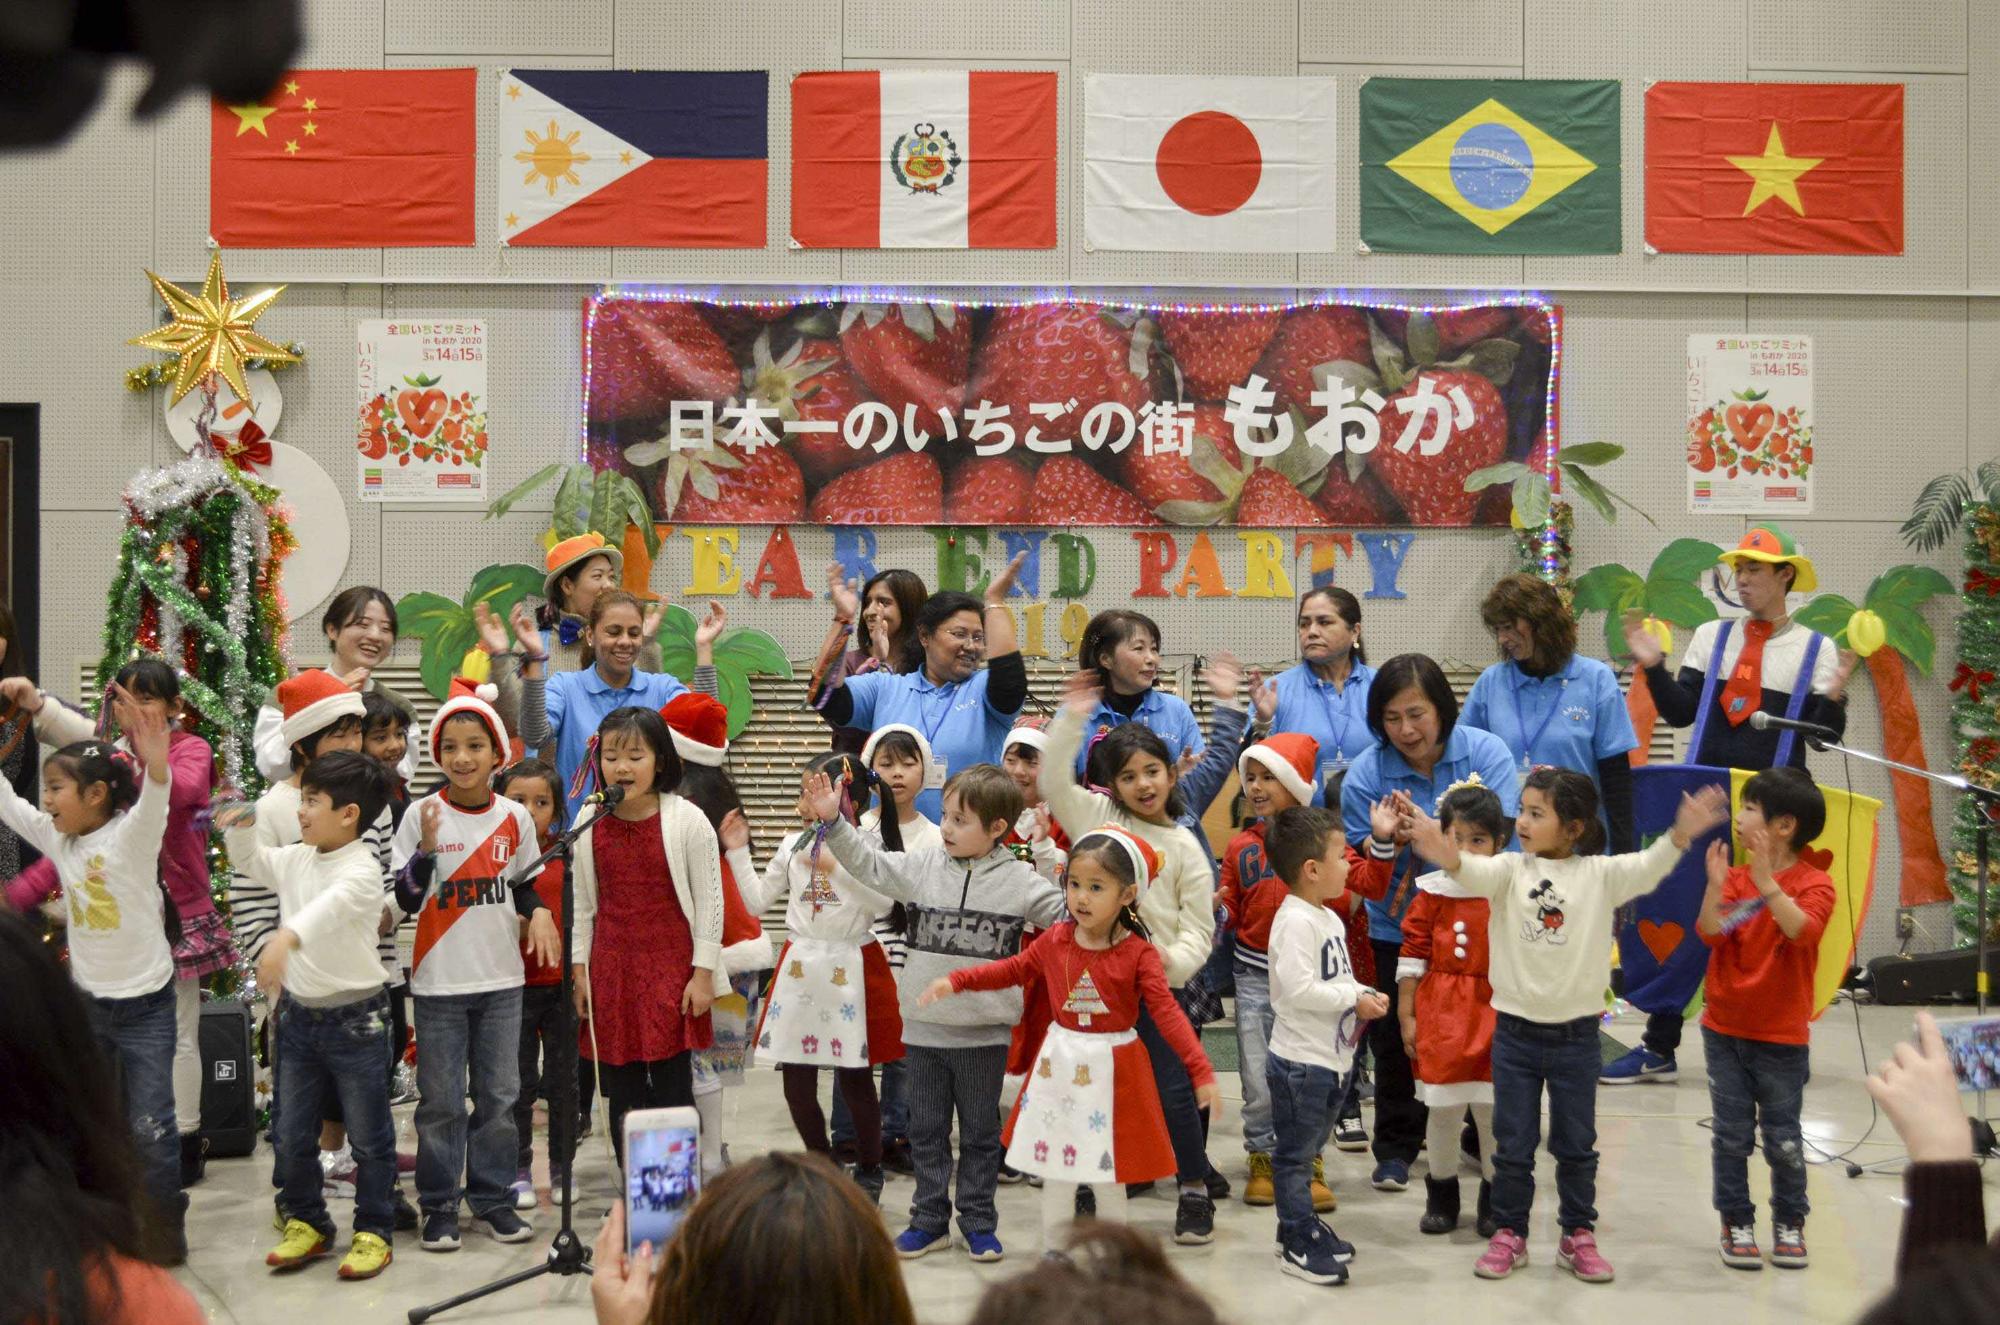 中国、フィリピン、ペルー、日本、ブラジル、ベトナムの国旗が掲げられた会場で、赤と白の服を着て、サンタの帽子を被った子供たちが発表をしている様子の写真